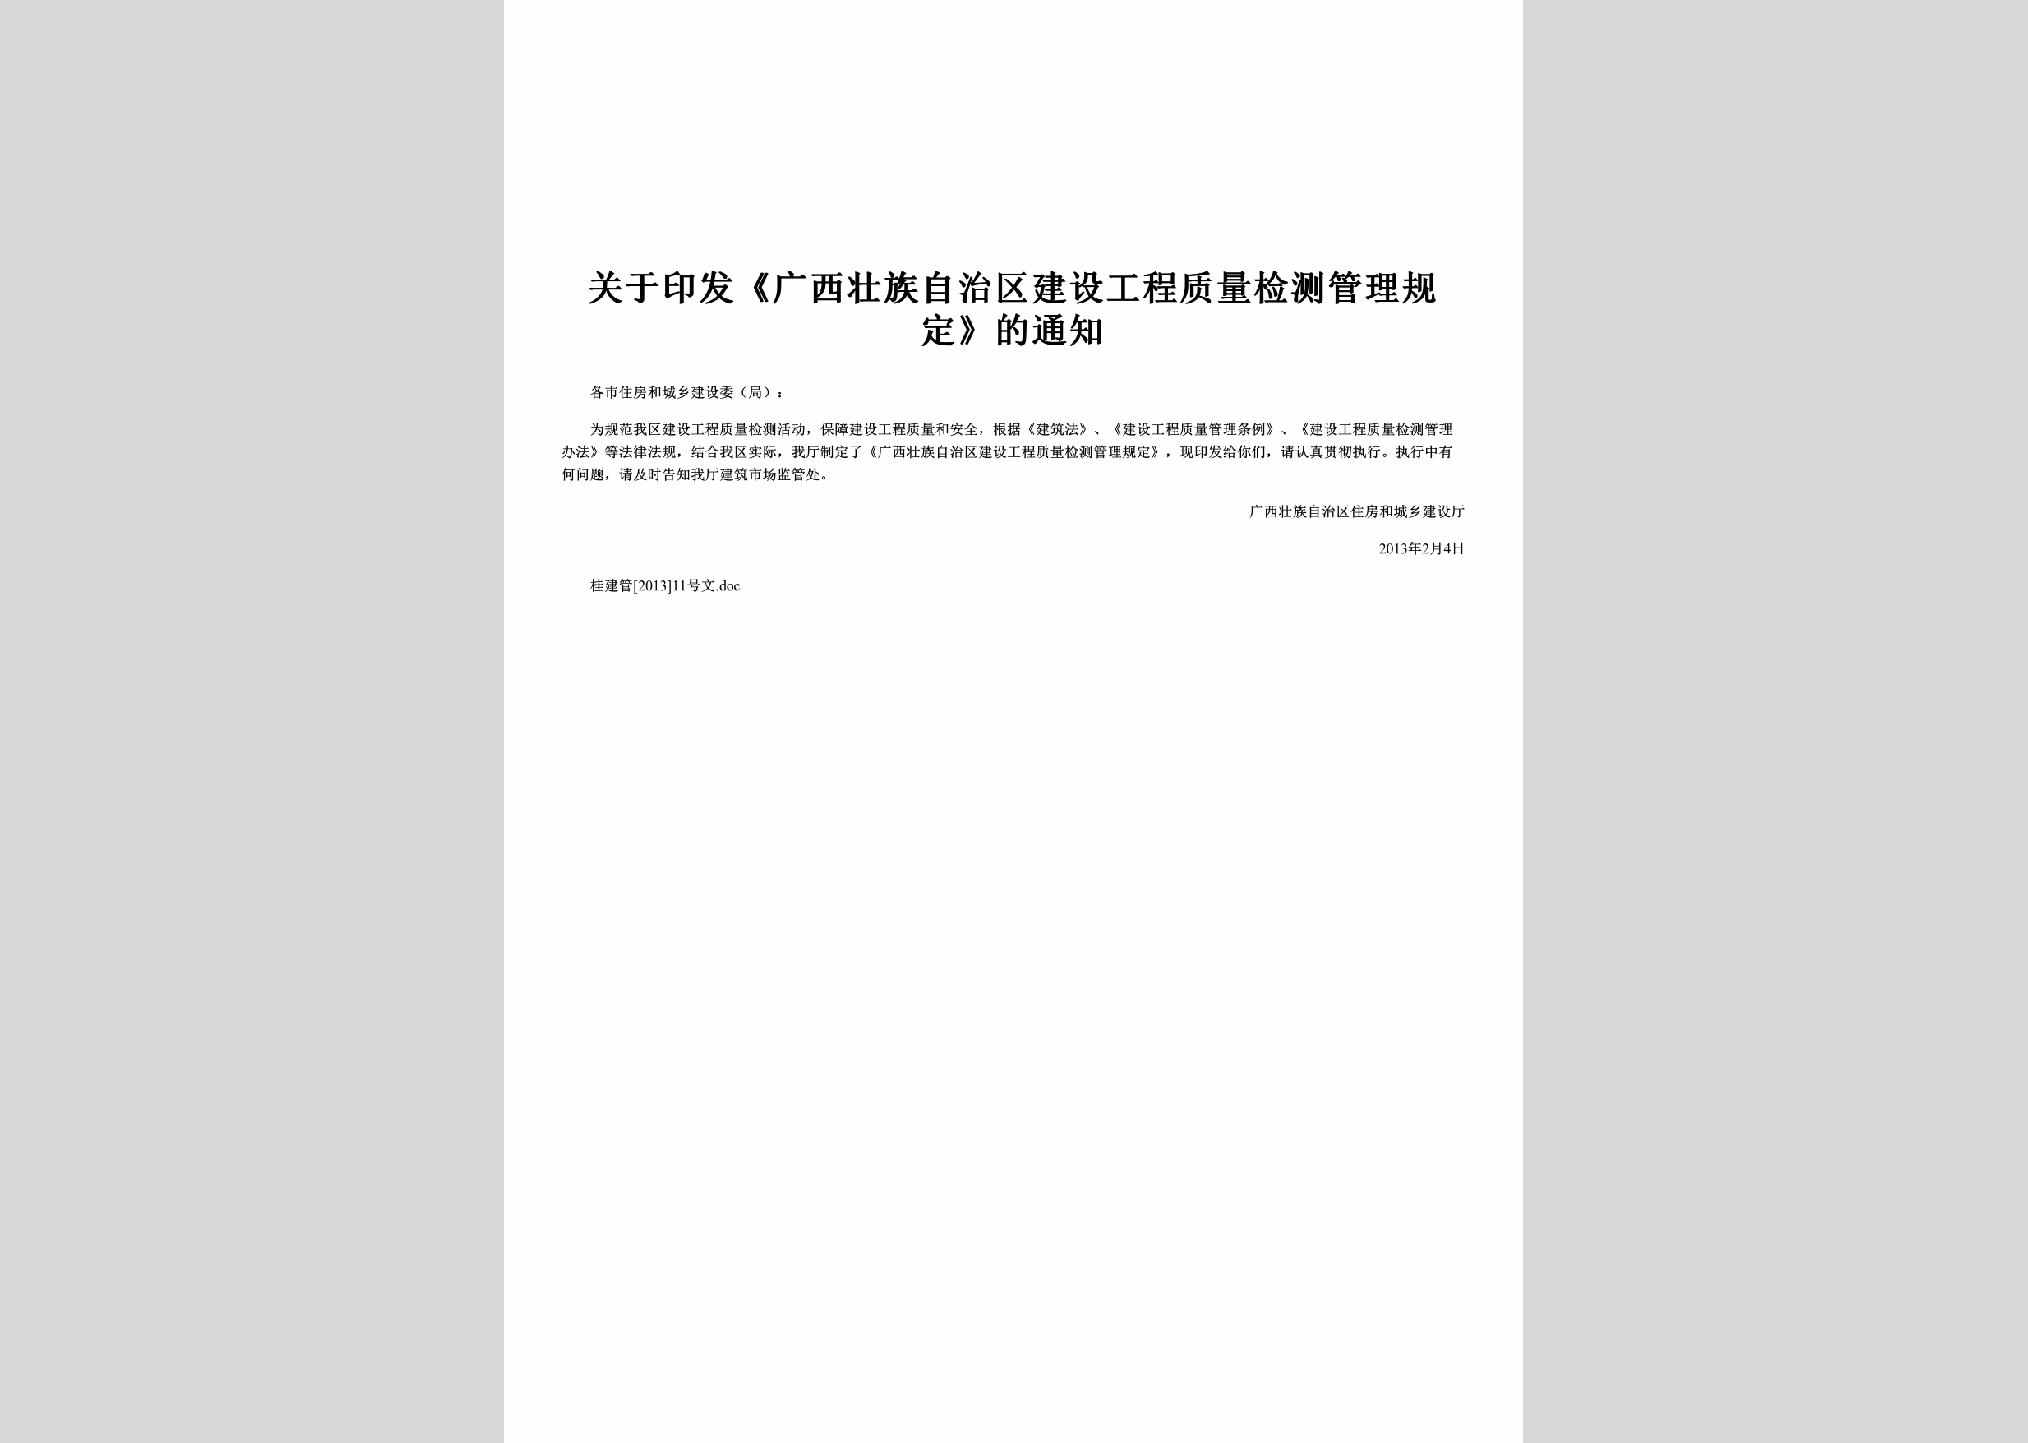 桂建管[2013]11号：关于印发《广西壮族自治区建设工程质量检测管理规定》的通知